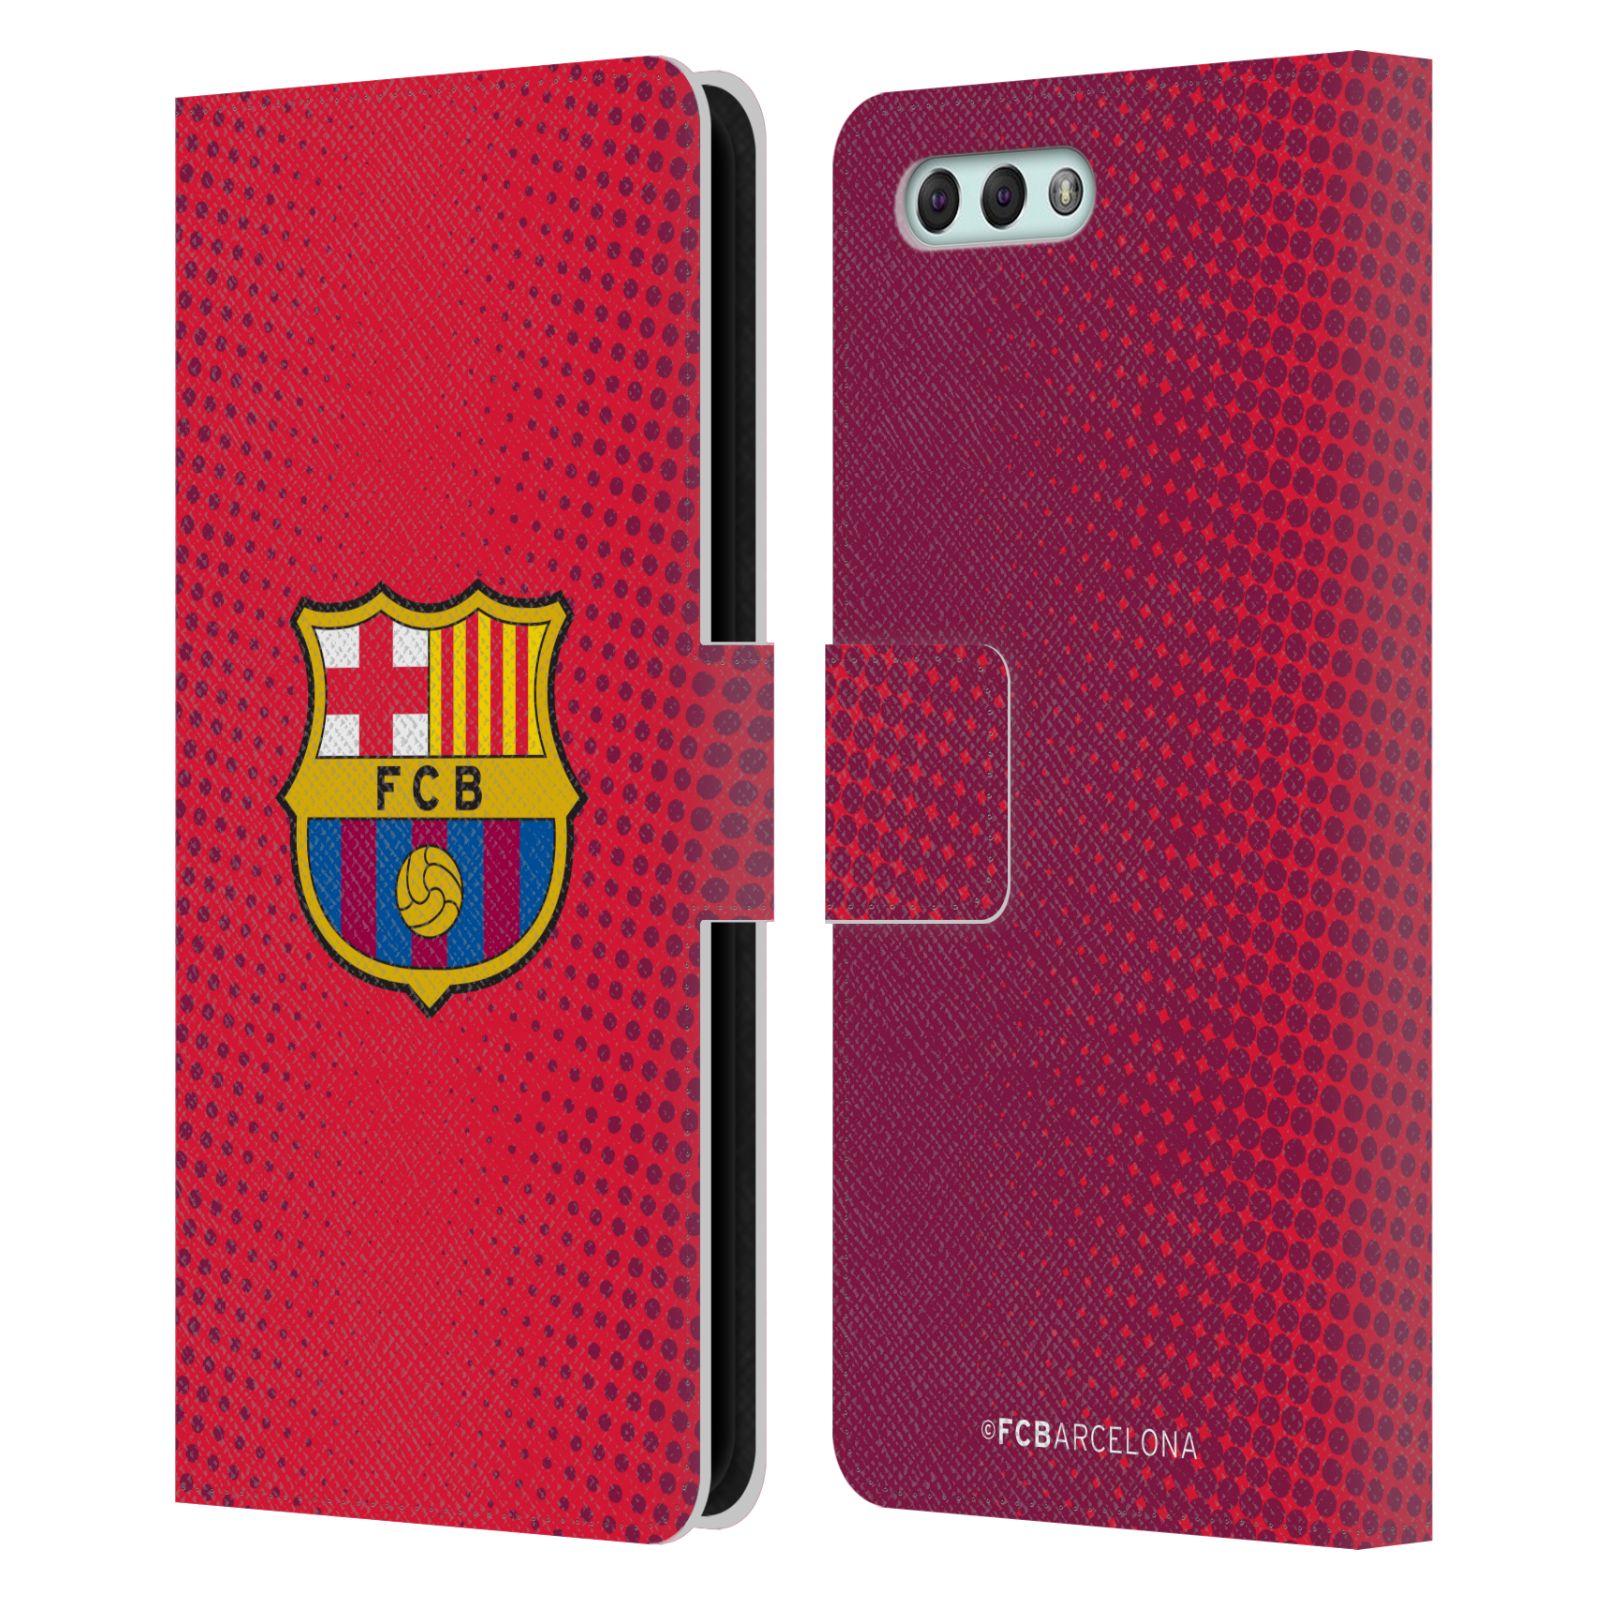 Pouzdro na mobil Asus Zenfone 4 ZE554KL  - HEAD CASE - FC Barcelona - Tečky červená